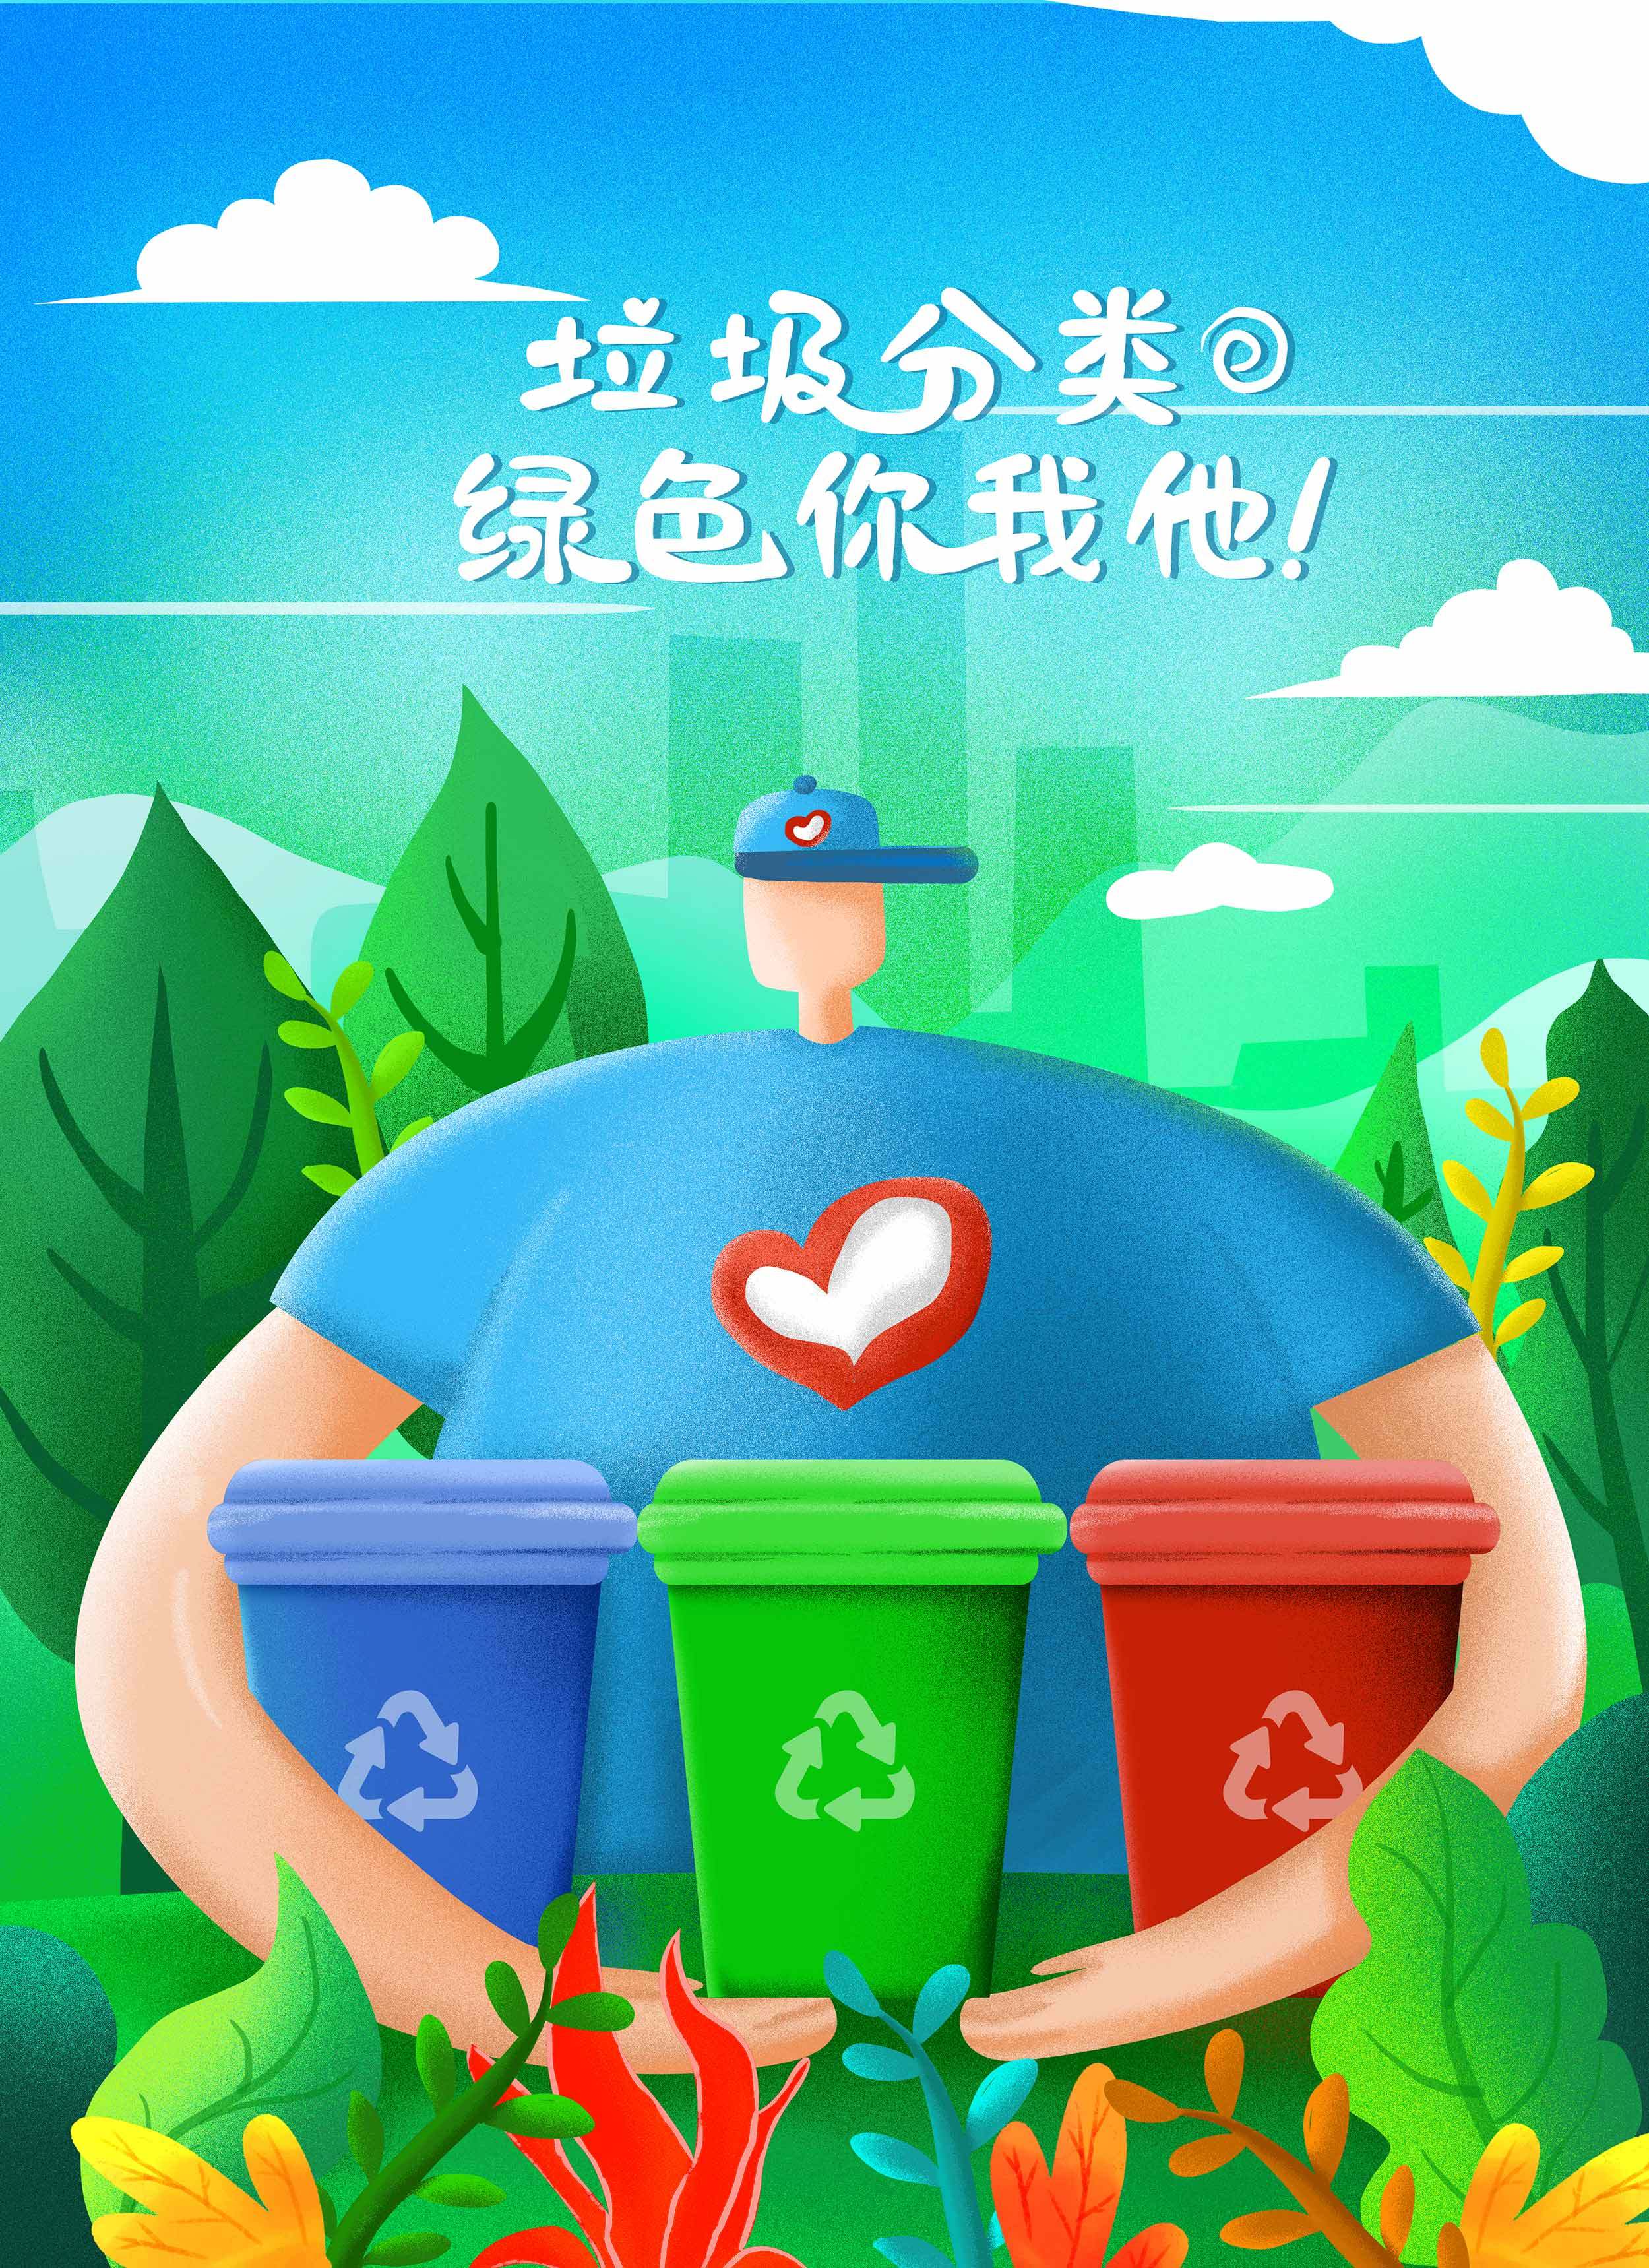 苏州：垃圾分类主题绘画 倡导绿色环保理念_活动